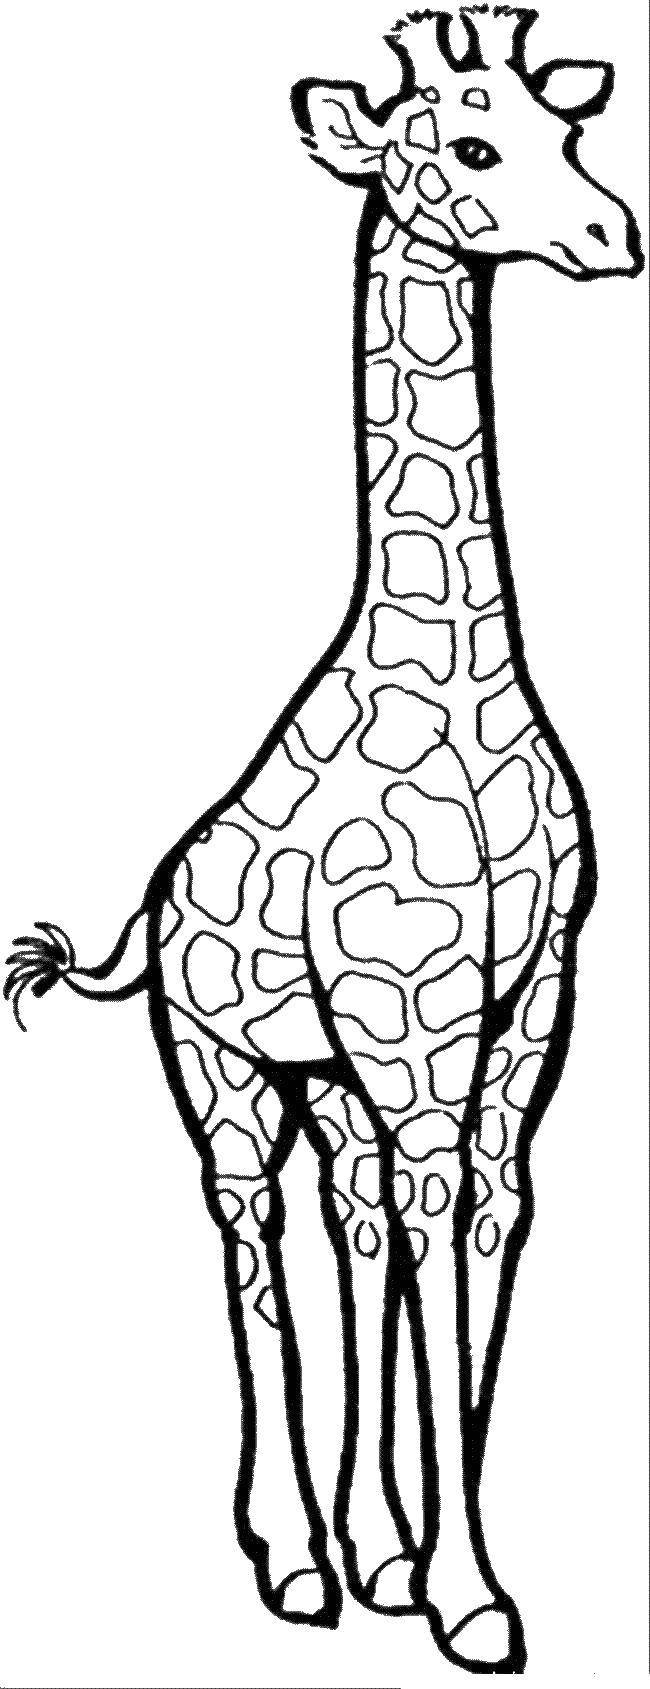 Название: Раскраска Очень очень высокая жирафа с длинными ногами и длинной шеей. Категория: животные. Теги: жираф.